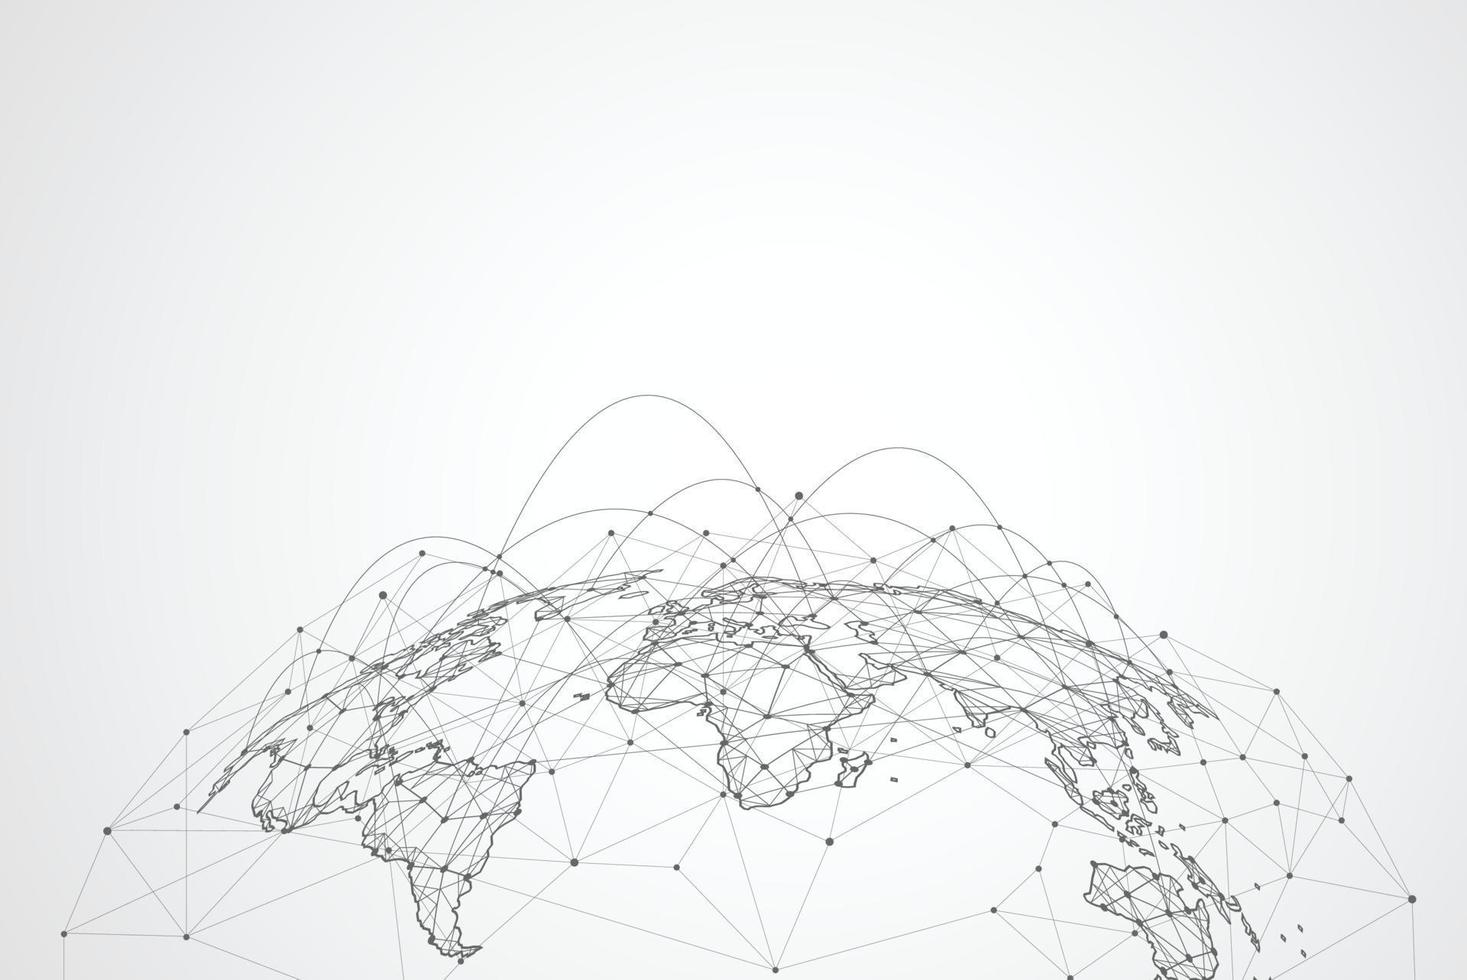 globale Netzwerkverbindung. Weltkartenpunkt- und Linienkompositionskonzept des globalen Geschäfts. Vektorillustration vektor